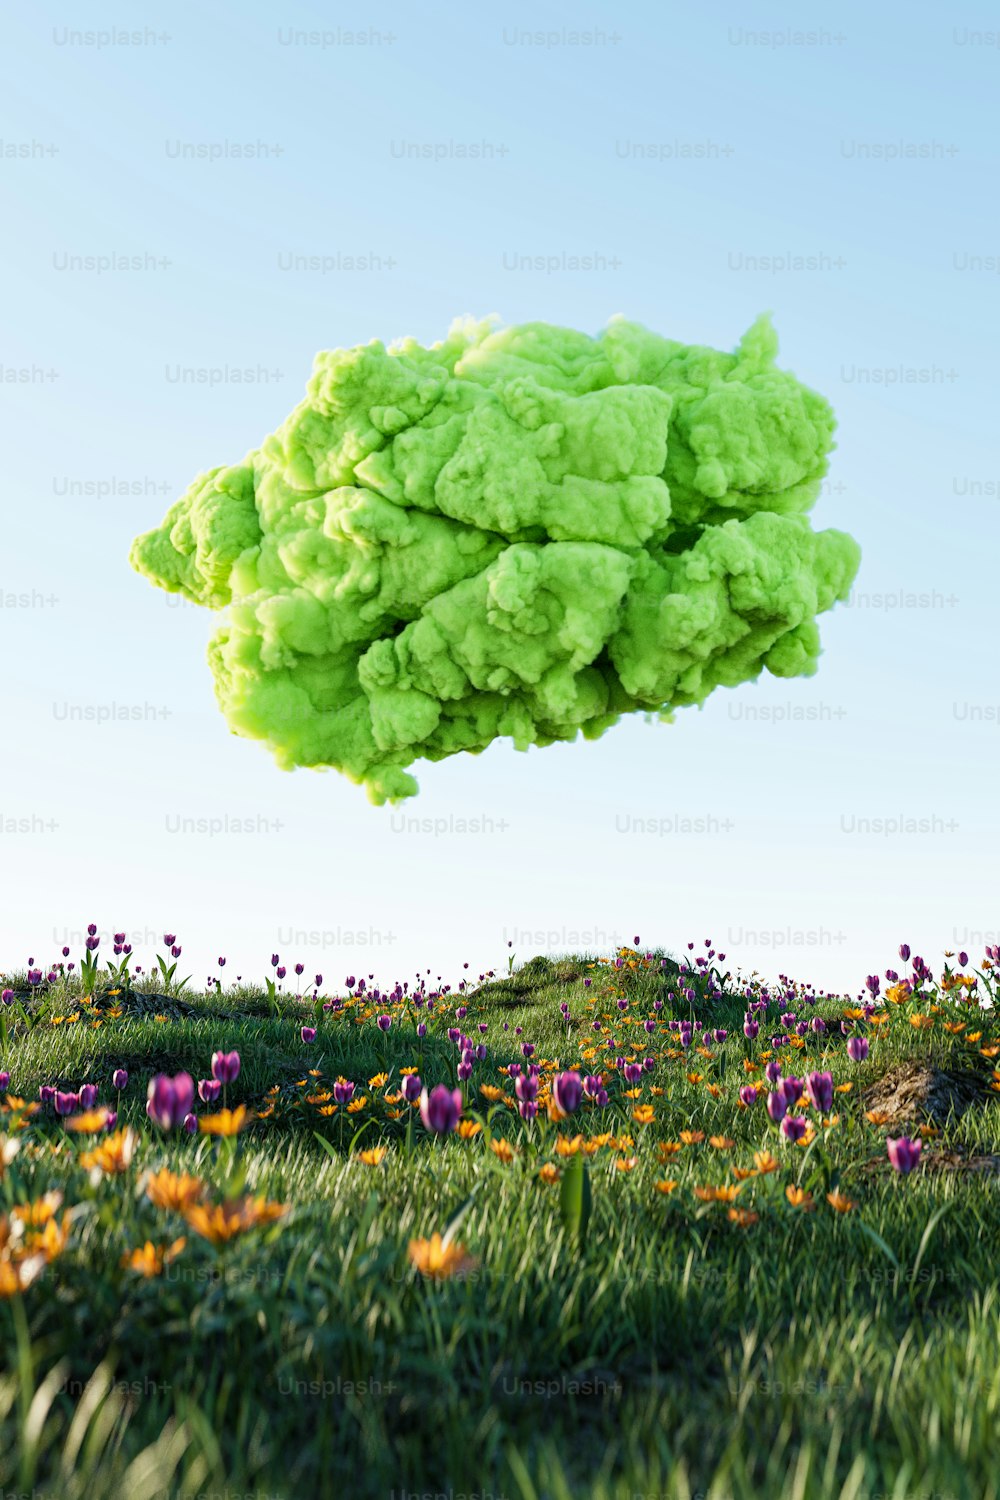 Un nuage vert flottant au-dessus d’un champ verdoyant